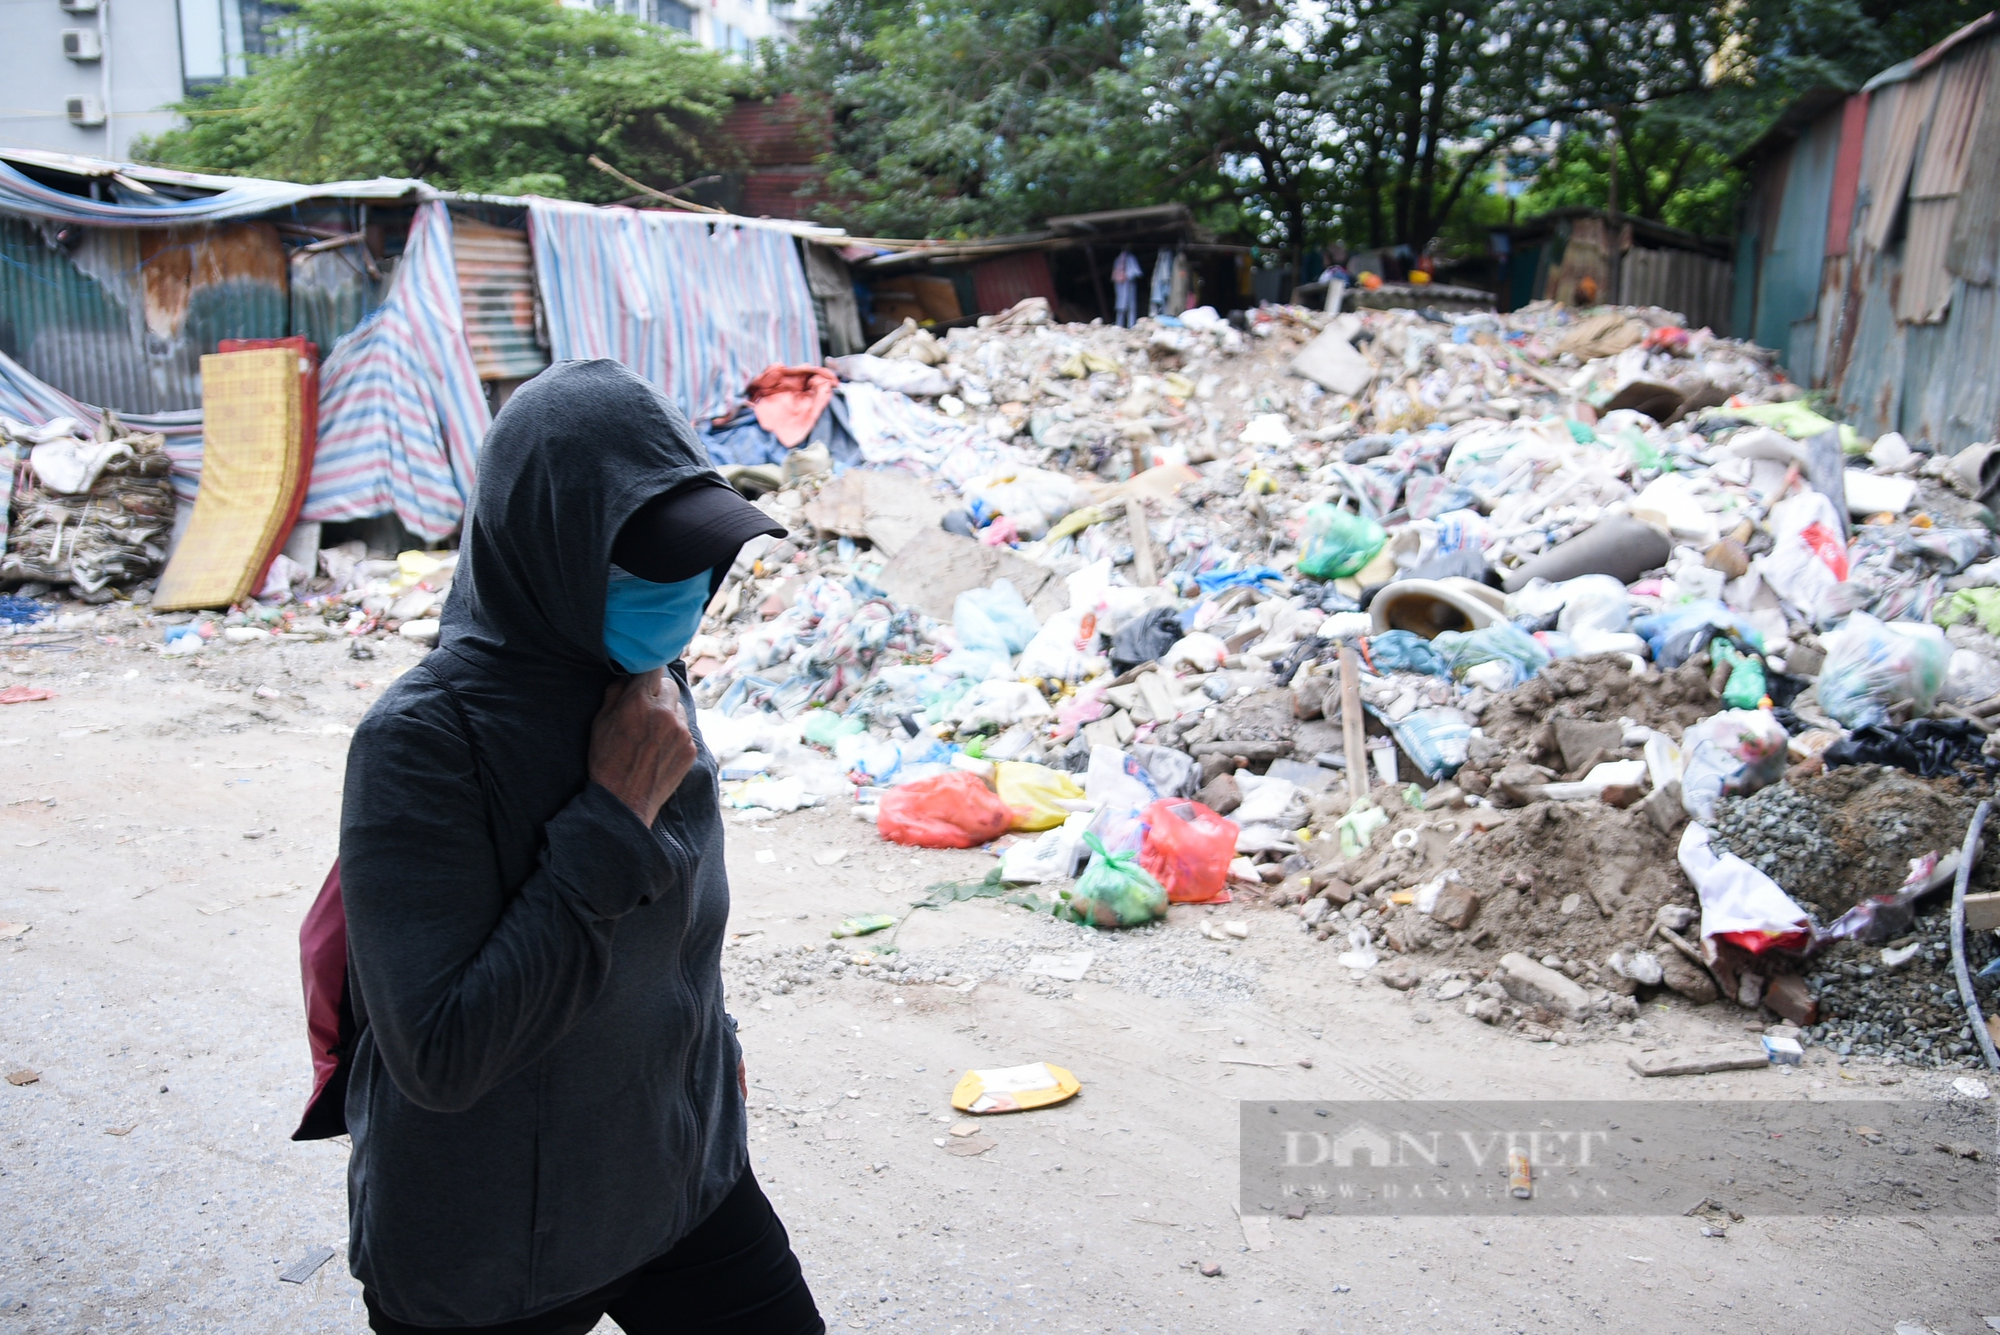 Ngang nhiên đổ rác thải xây dựng giữa ban ngày trong khu dân cư - Ảnh 4.